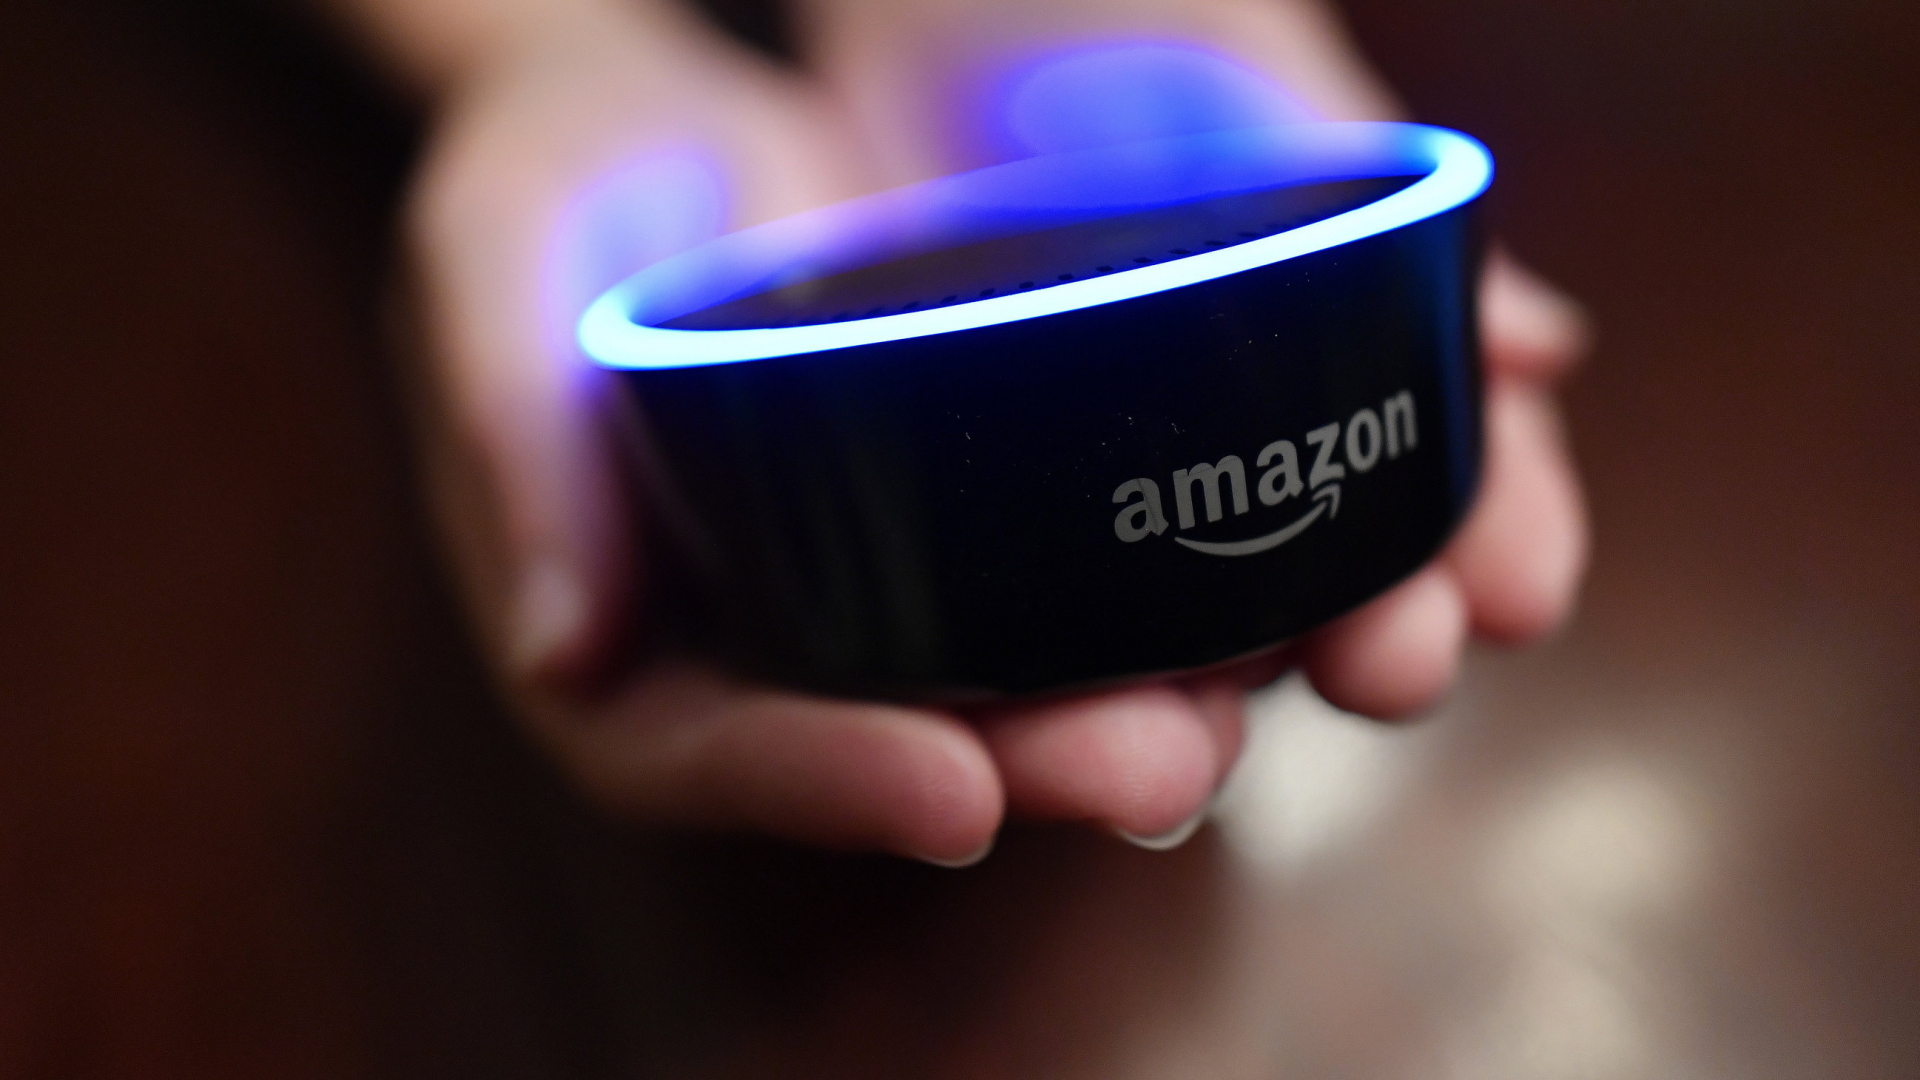 Amazon Voice Assistant: Alexa must speak in her grandmother’s voice